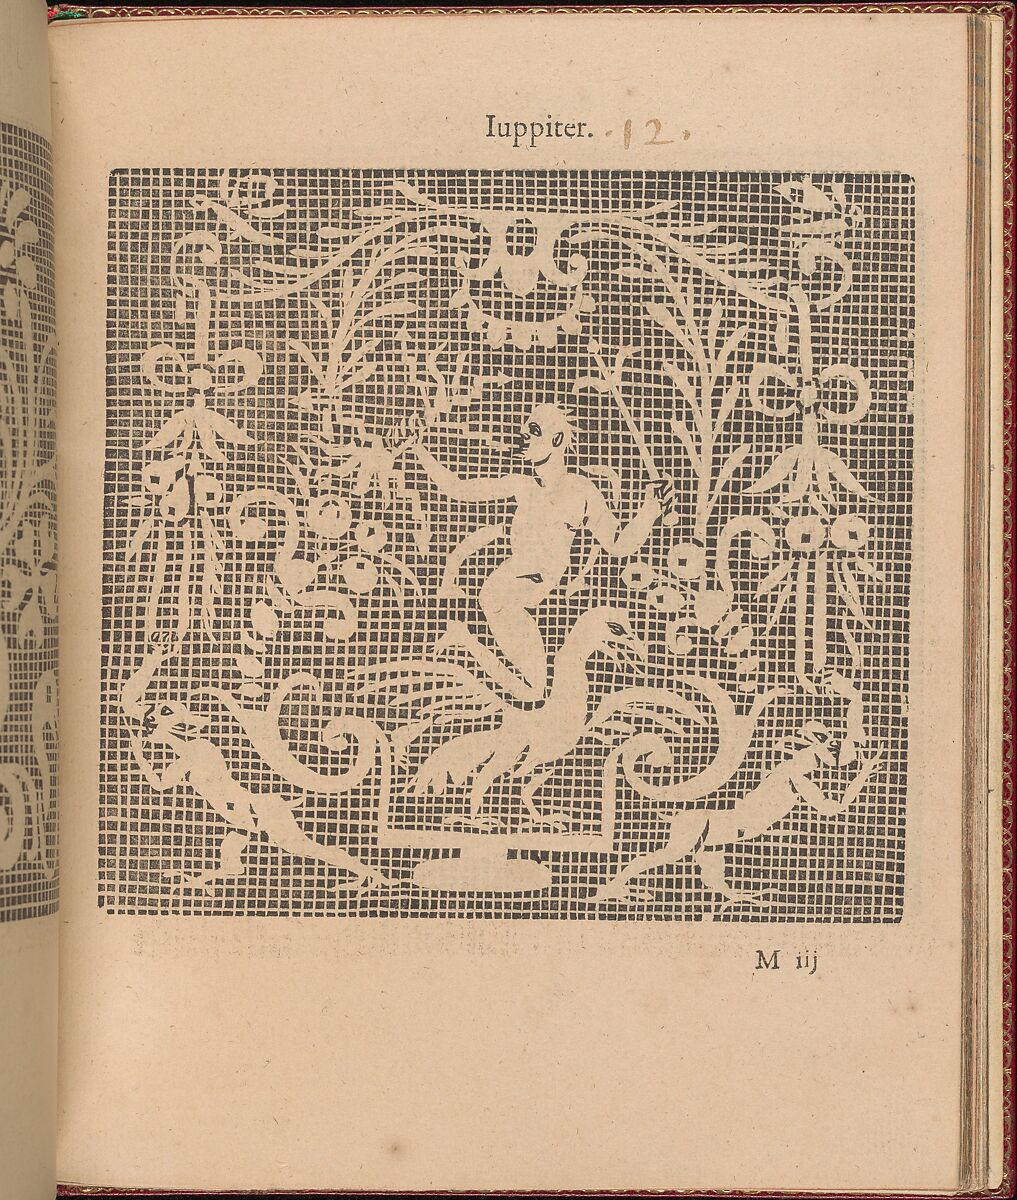 Les Singuliers et Nouveaux Portraicts... page 47 (recto), Federico de Vinciolo (Italian, active Paris, ca. 1587–99), Woodcut 